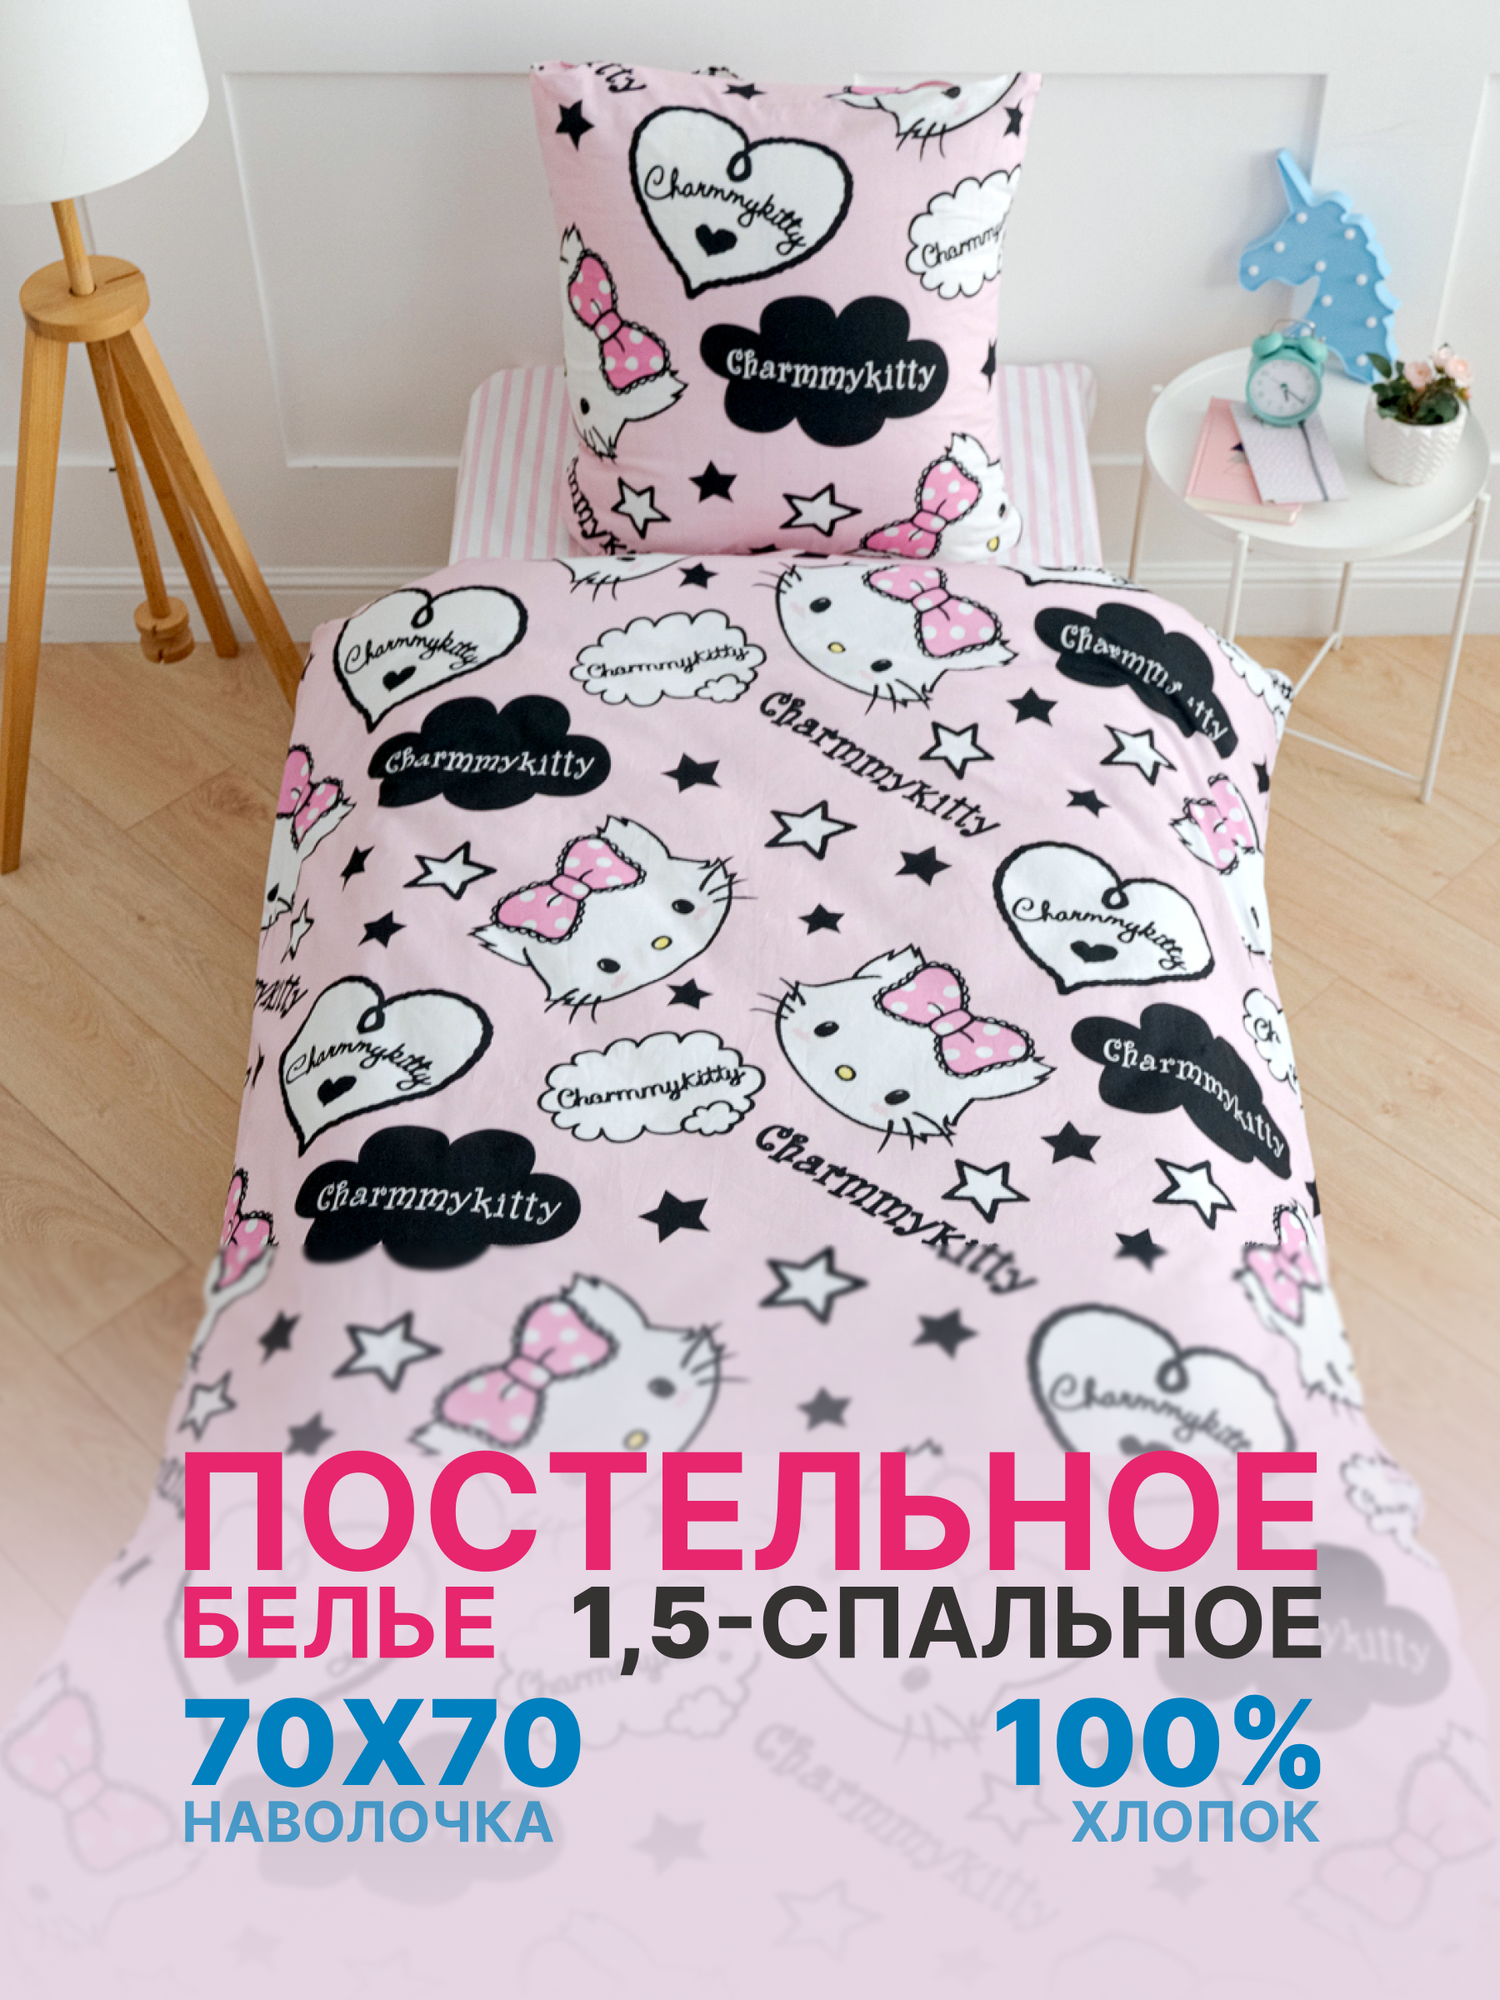 Детское постельное белье 1.5-спальное Павлинка «Шармикитти Charmy Kitty комикс» бязь 100% хлопок